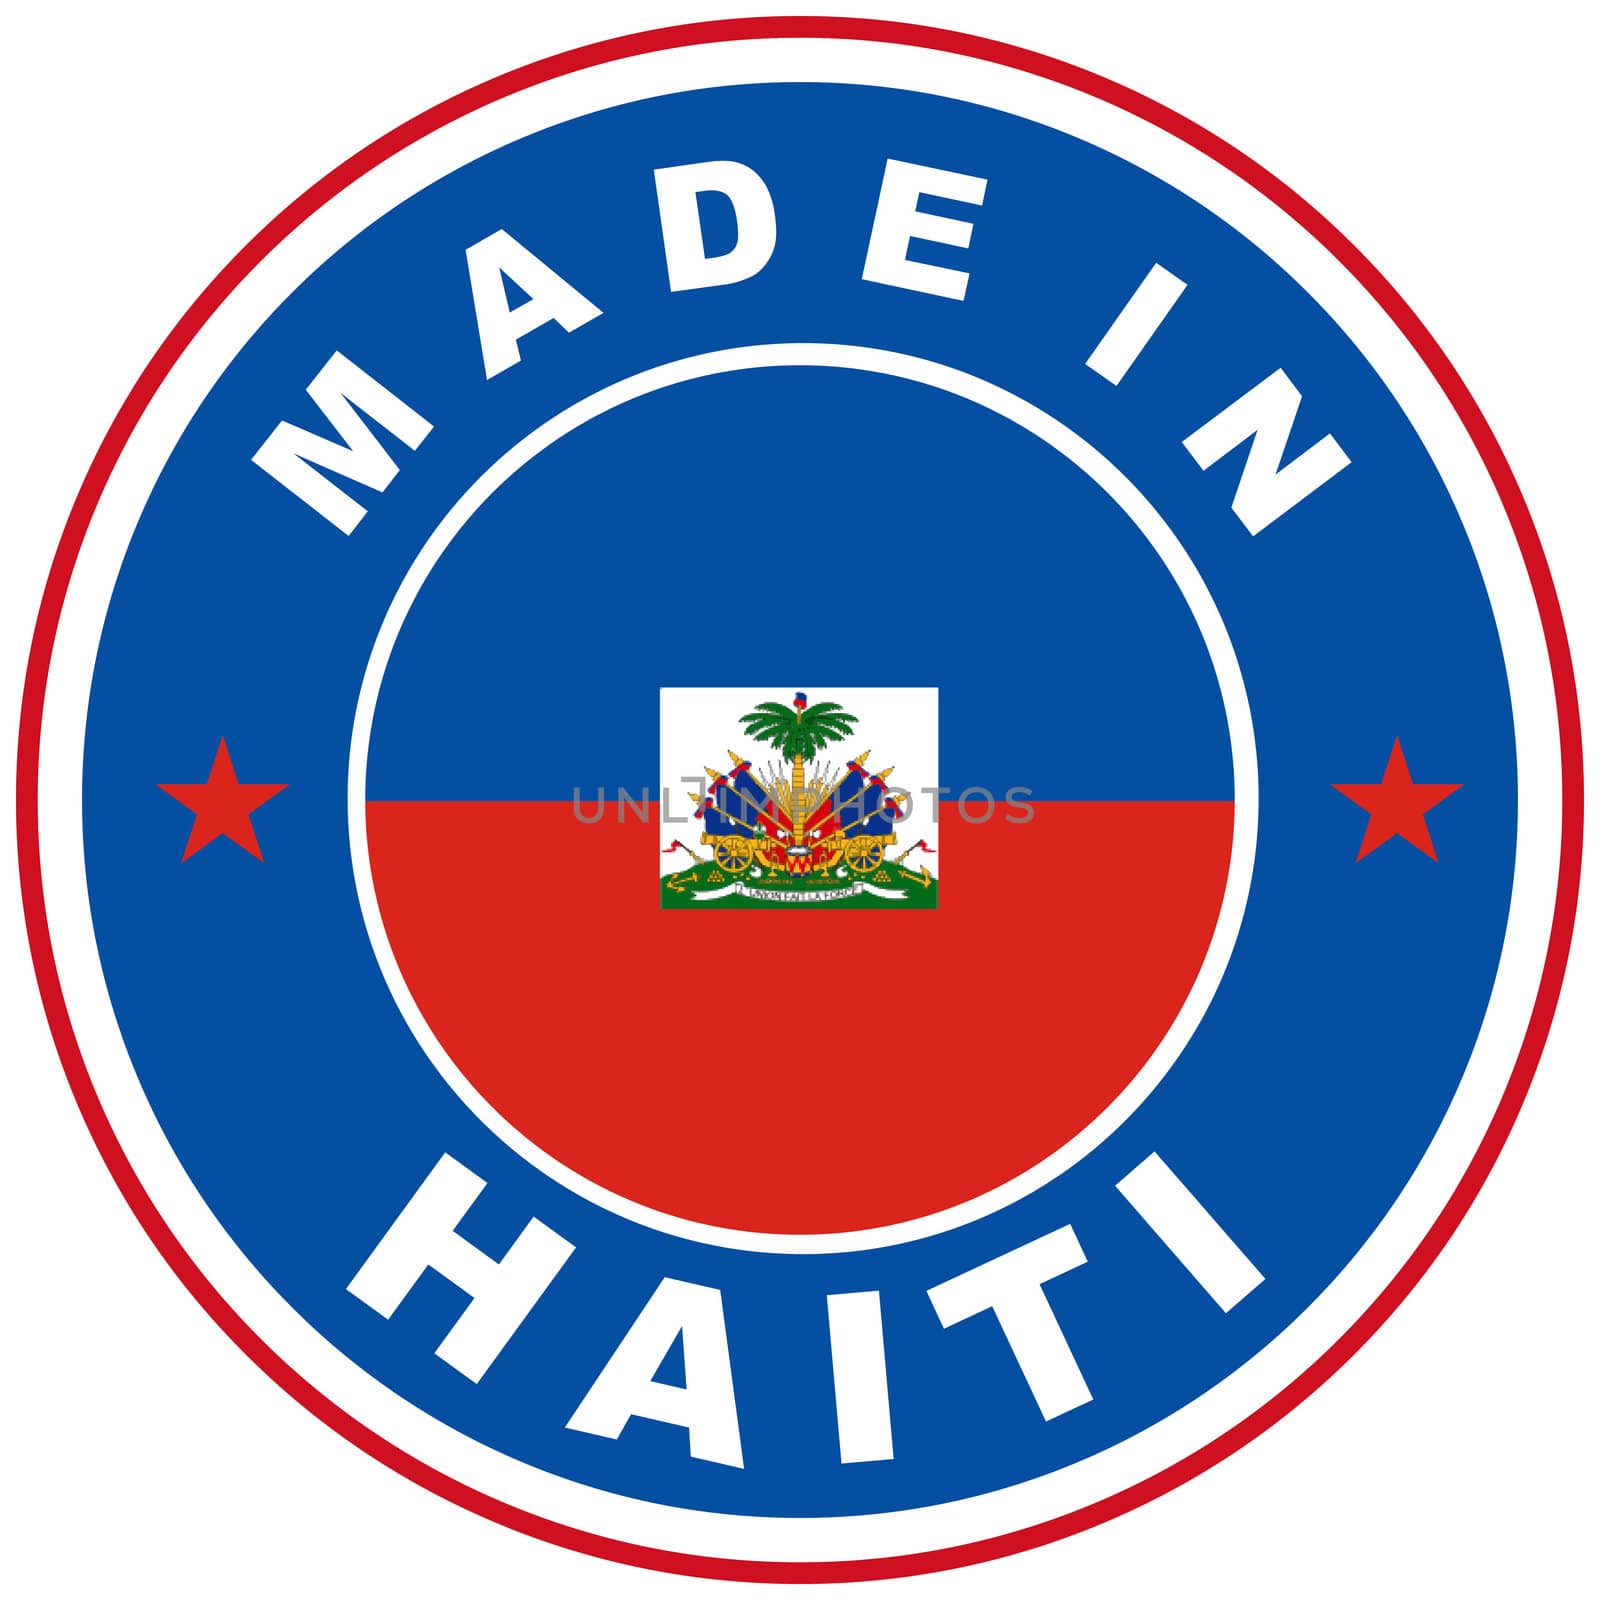 made in haiti by tony4urban